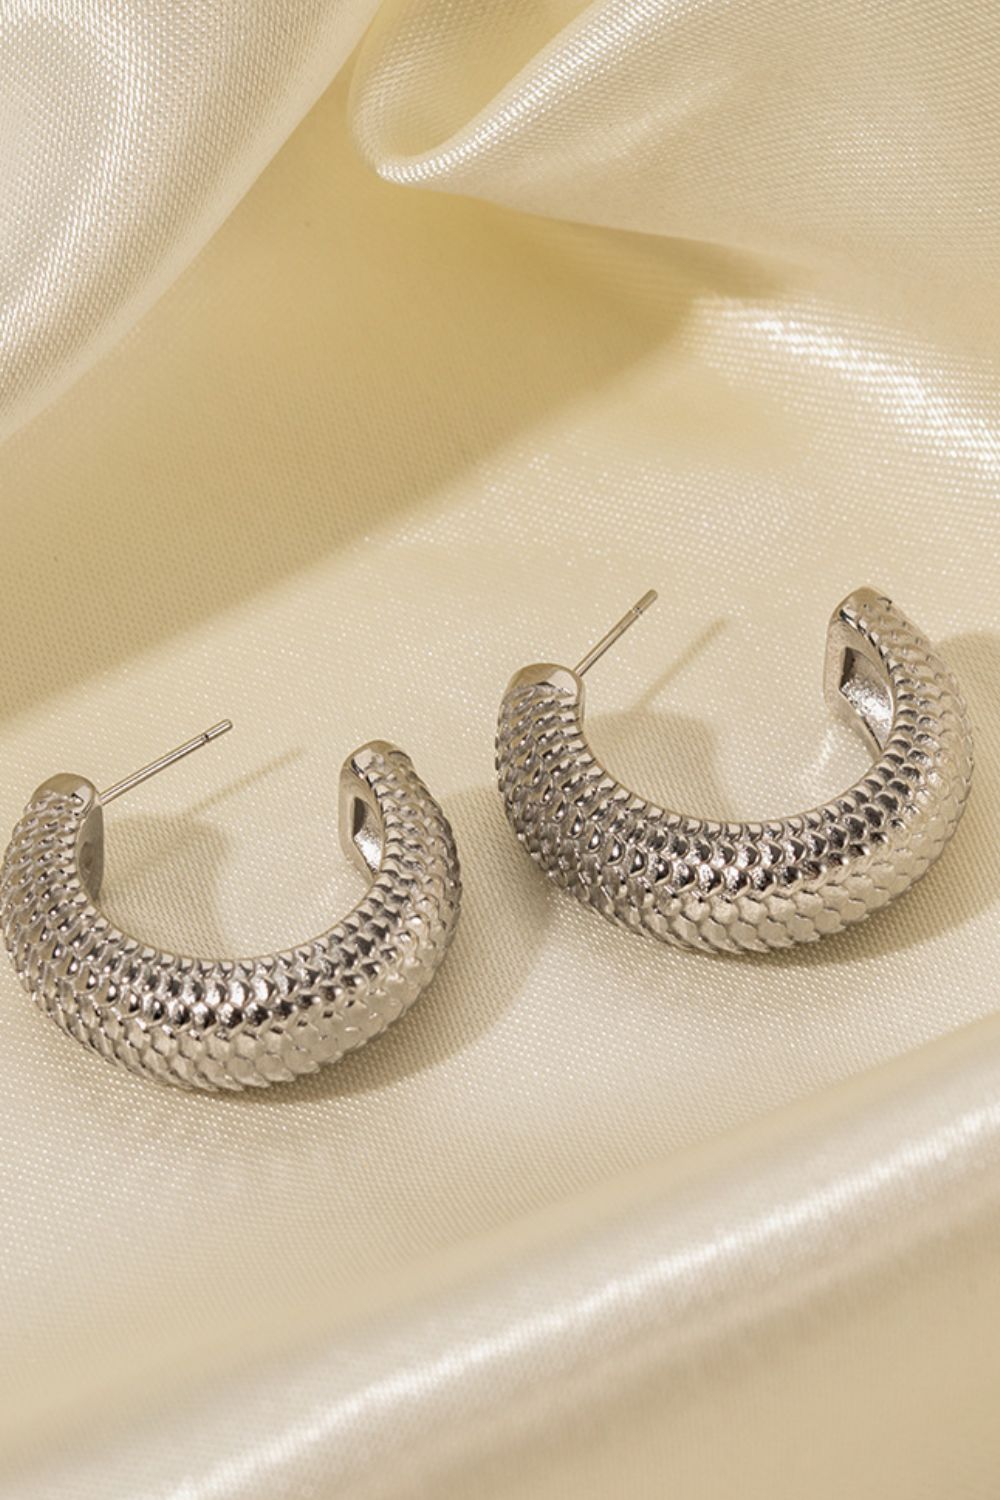 Vintage Leopard Stainless Steel Cuff Earrings Simple Clip Earring